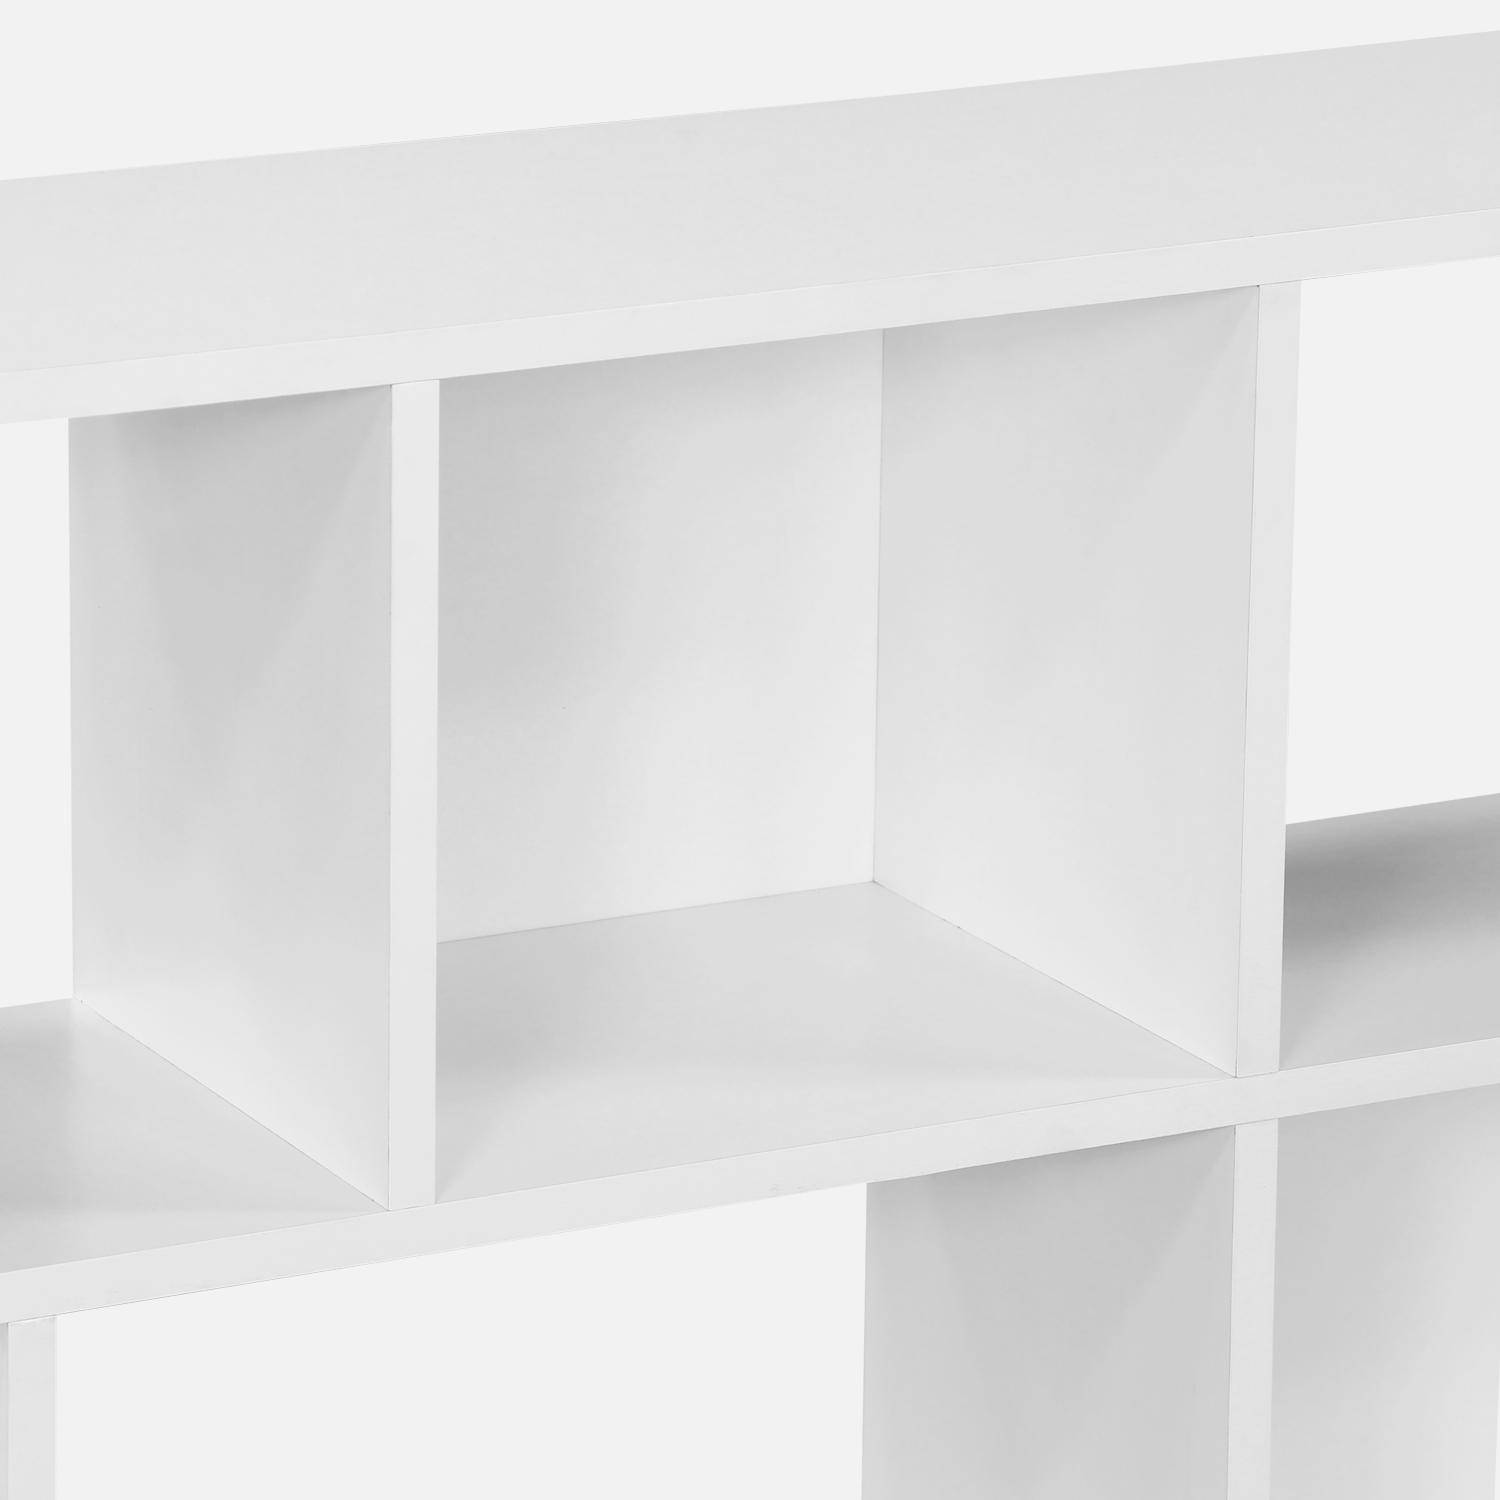 Bibliothèque design asymétrique blanche, Pieter, 3 étagères, 12 compartiments de rangement,sweeek,Photo3